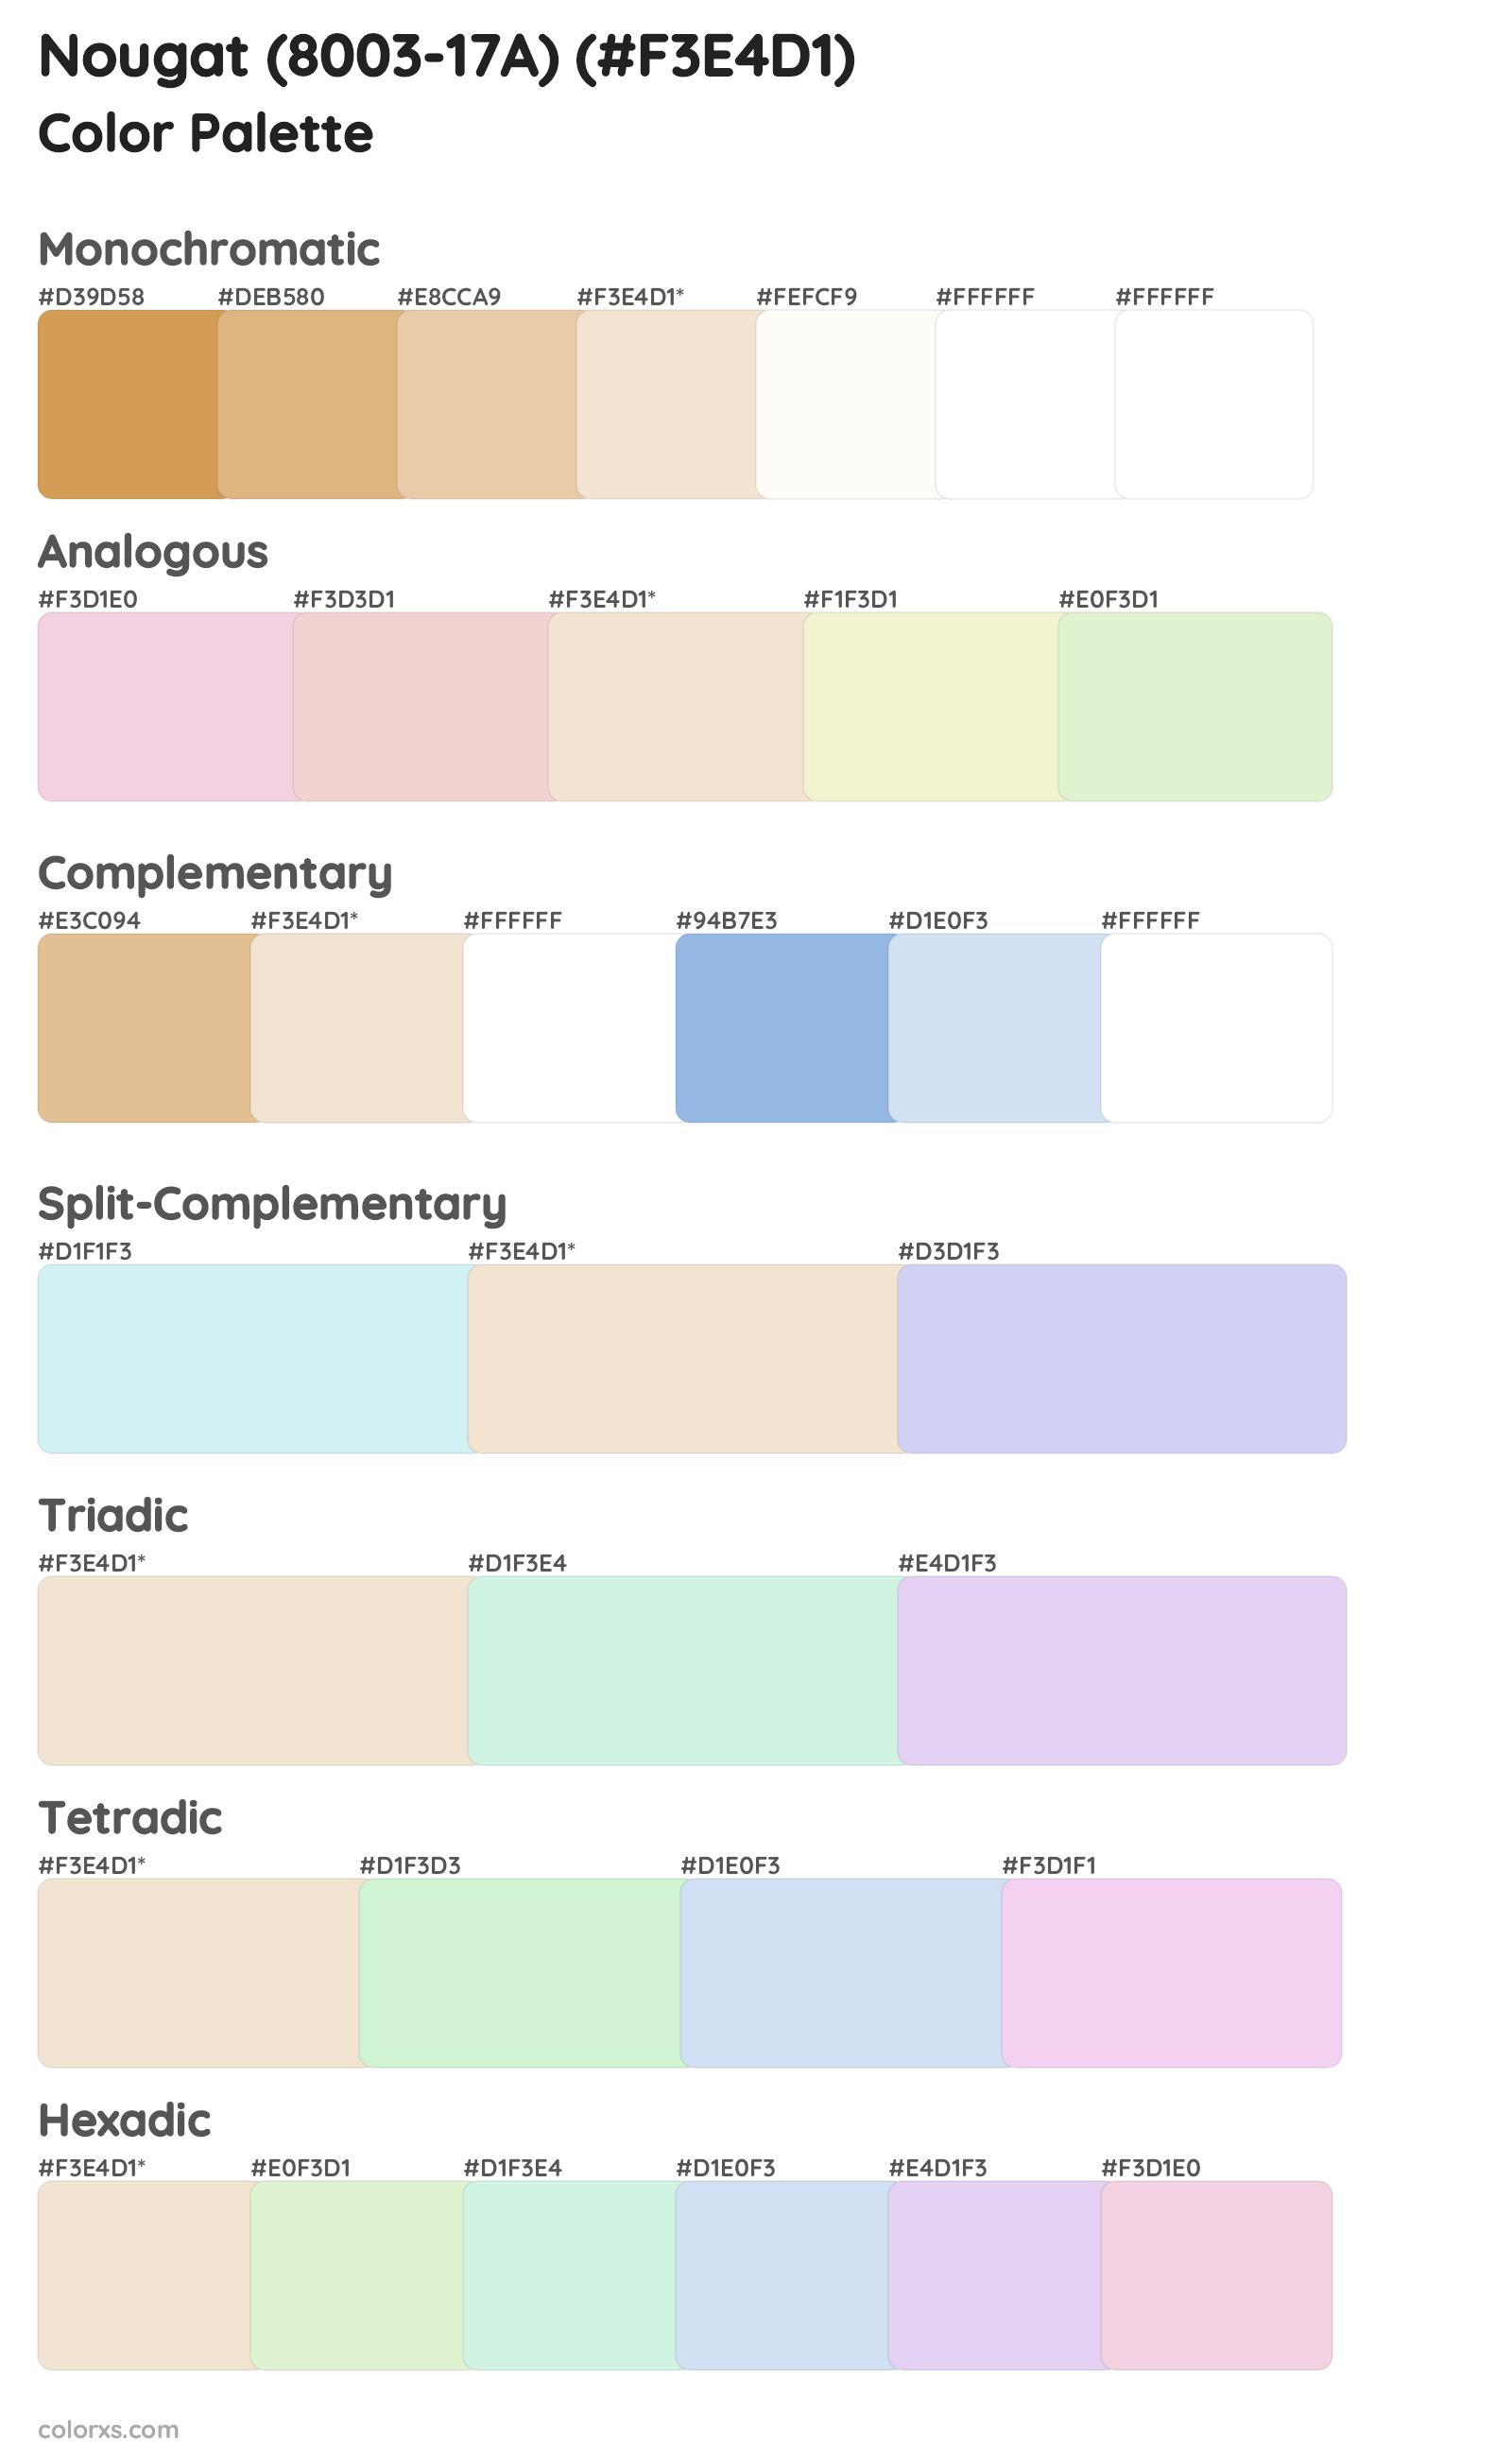 Nougat (8003-17A) Color Scheme Palettes